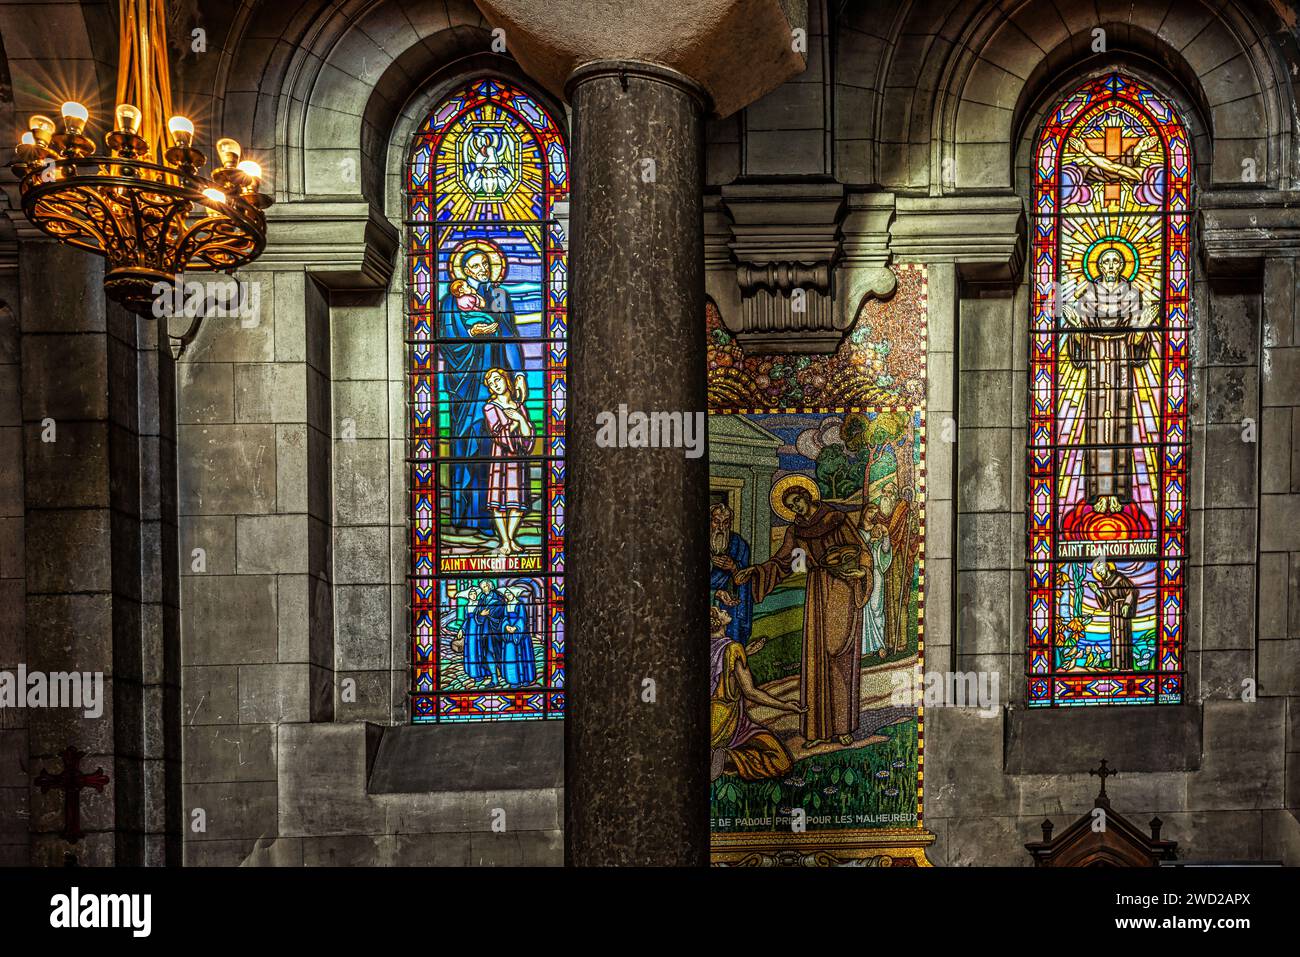 Kunstvolle Buntglasfenster in der Kathedrale von San Carlo. Saint-Etienne, Region Auvergne-Rhône-Alpes, Frankreich Stockfoto